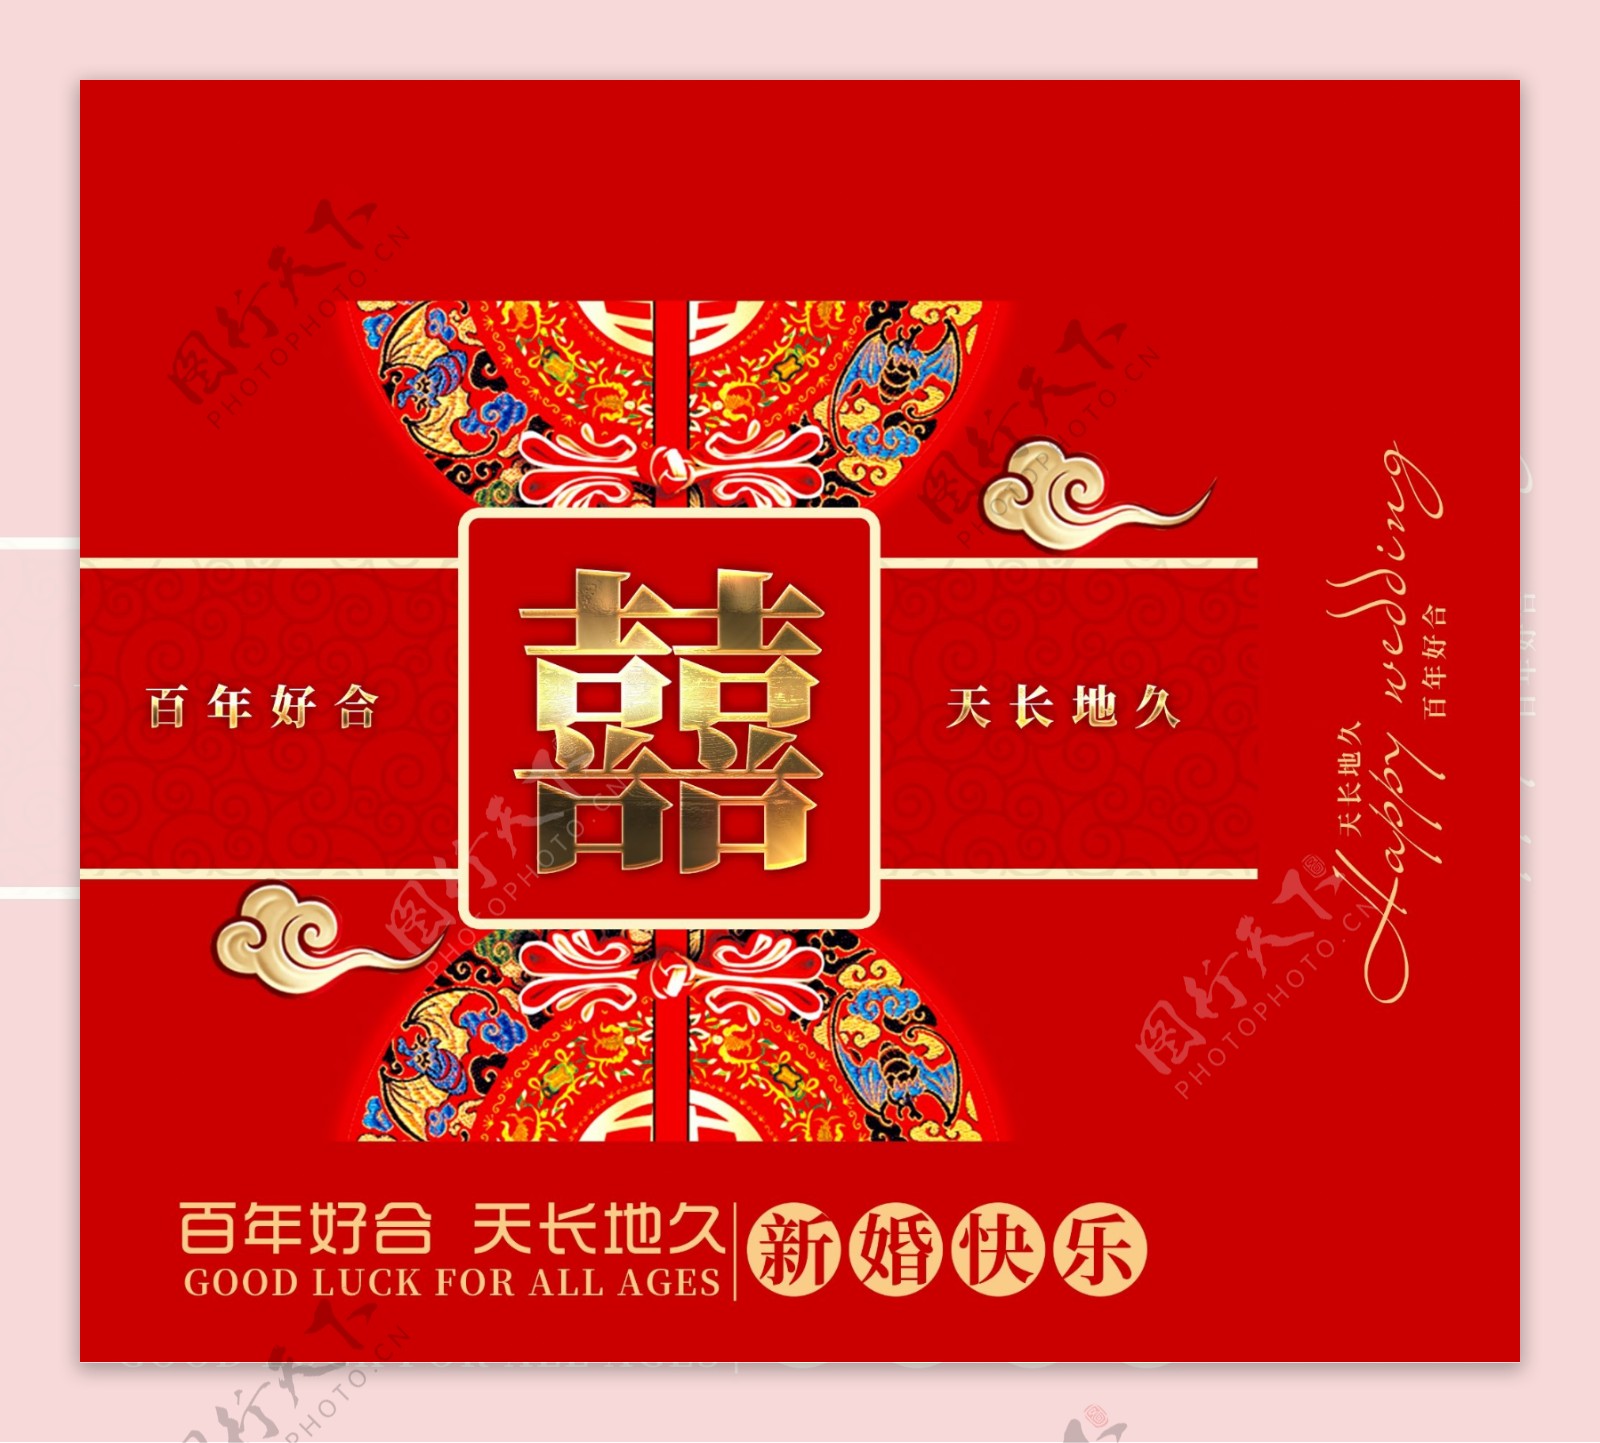 2018红色创意中国风婚庆礼盒模版设计